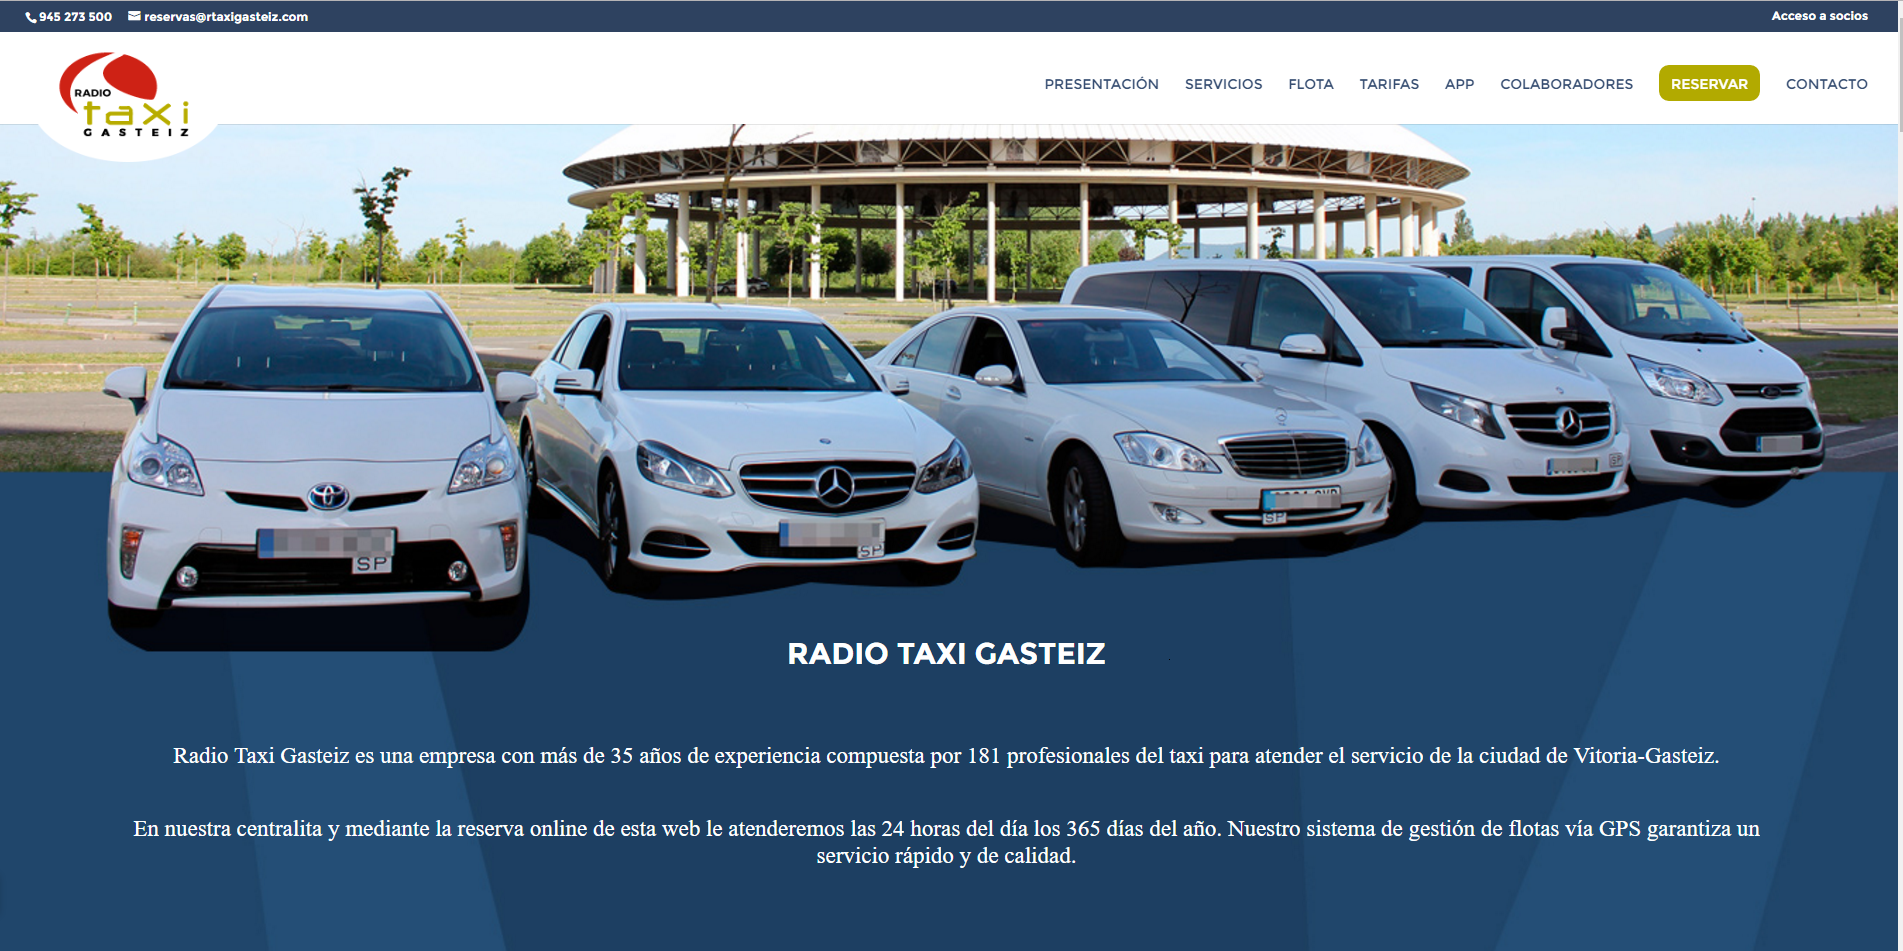 Radio Taxi Gasteiz S.A.